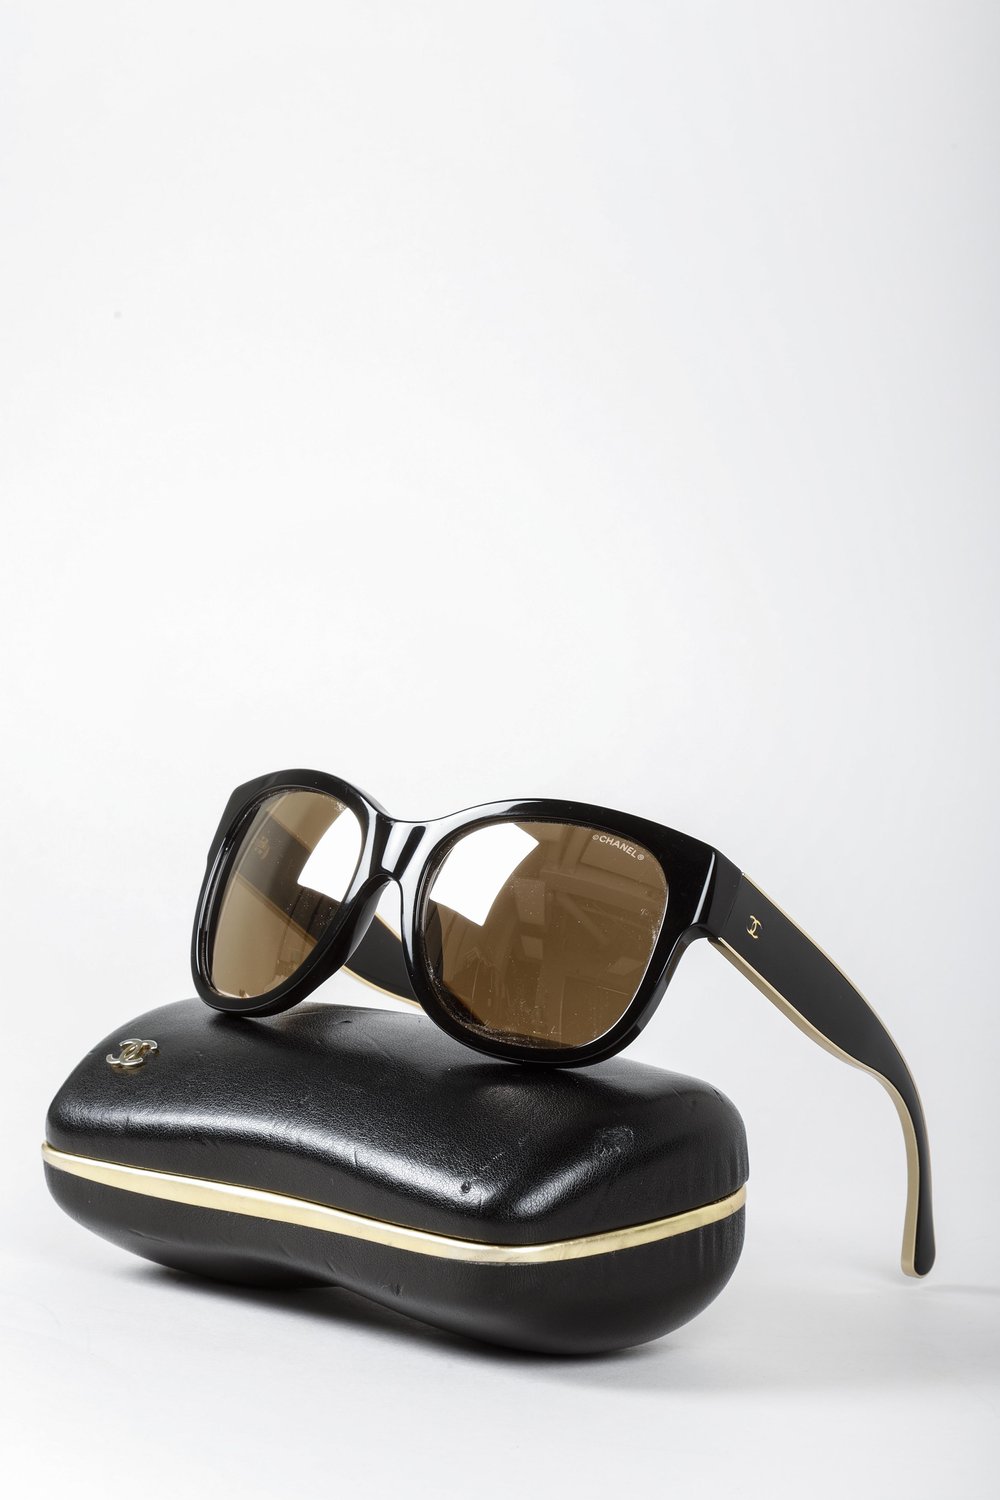 Chanel Sunglasses 0CH4269 C395S6 55